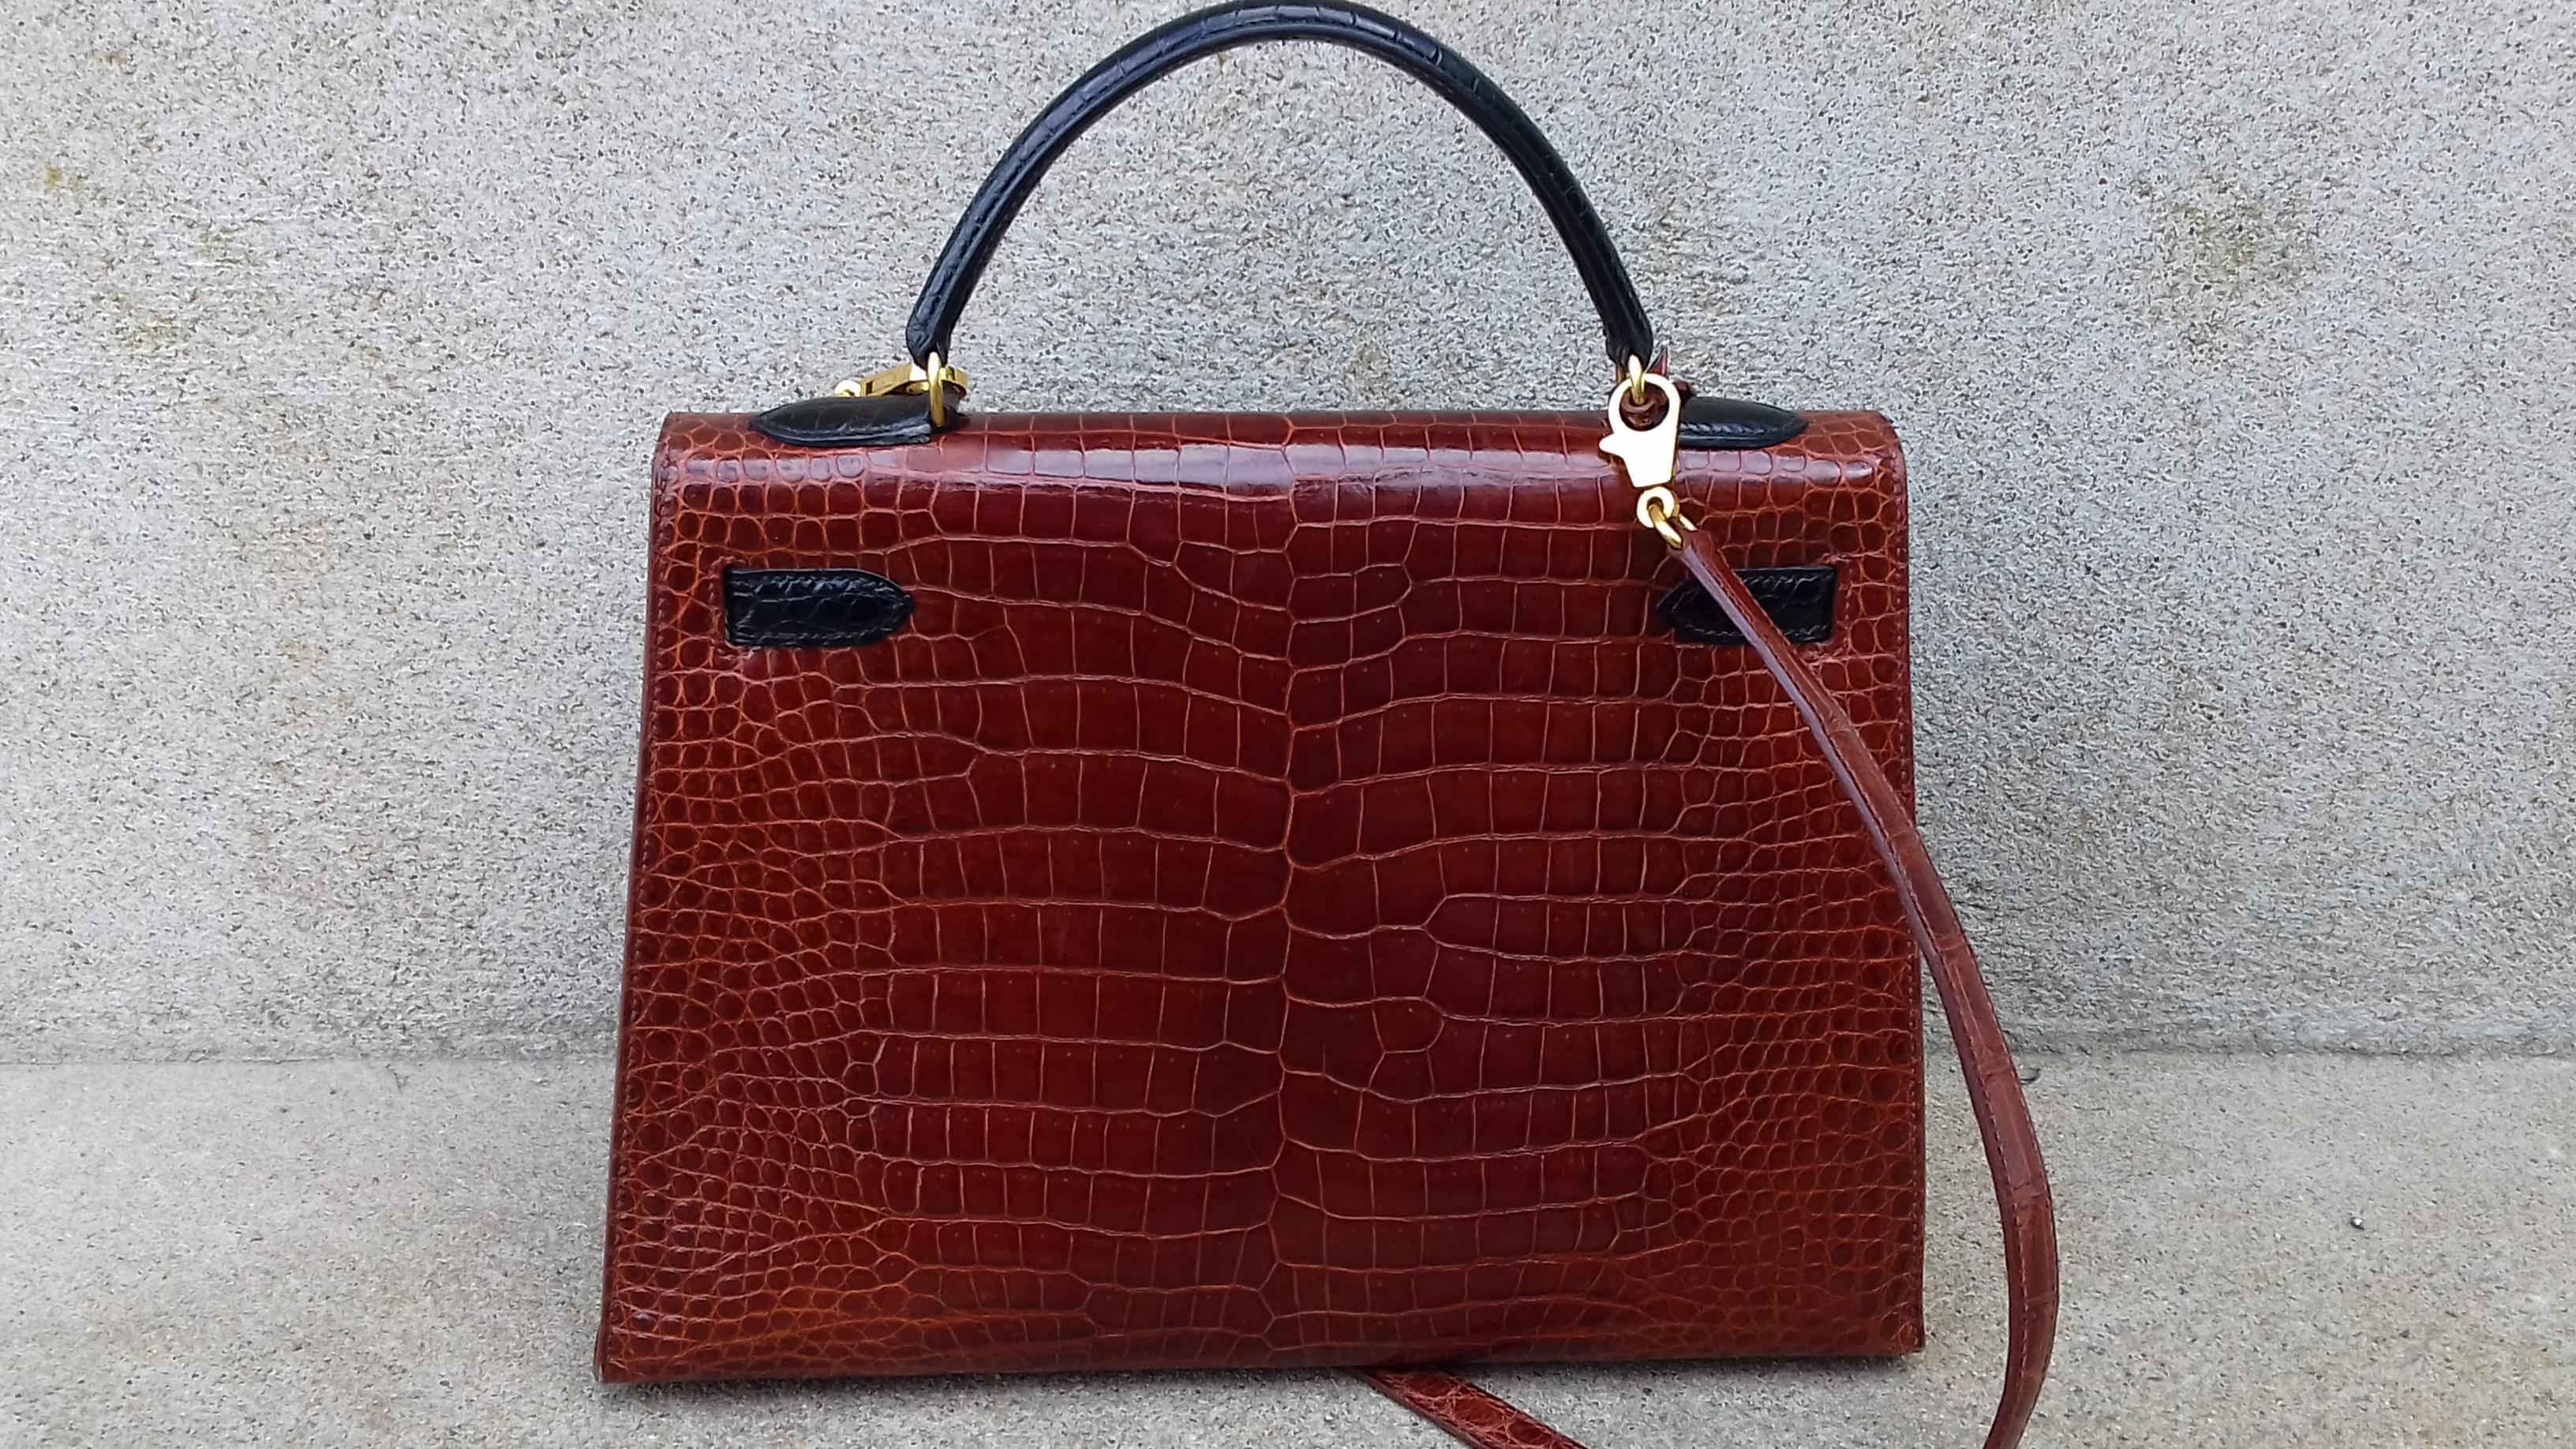 Exceptional Hermès Kelly Bag Vintage Bicolore Etrusque and Black Crocodile 33 cm 2